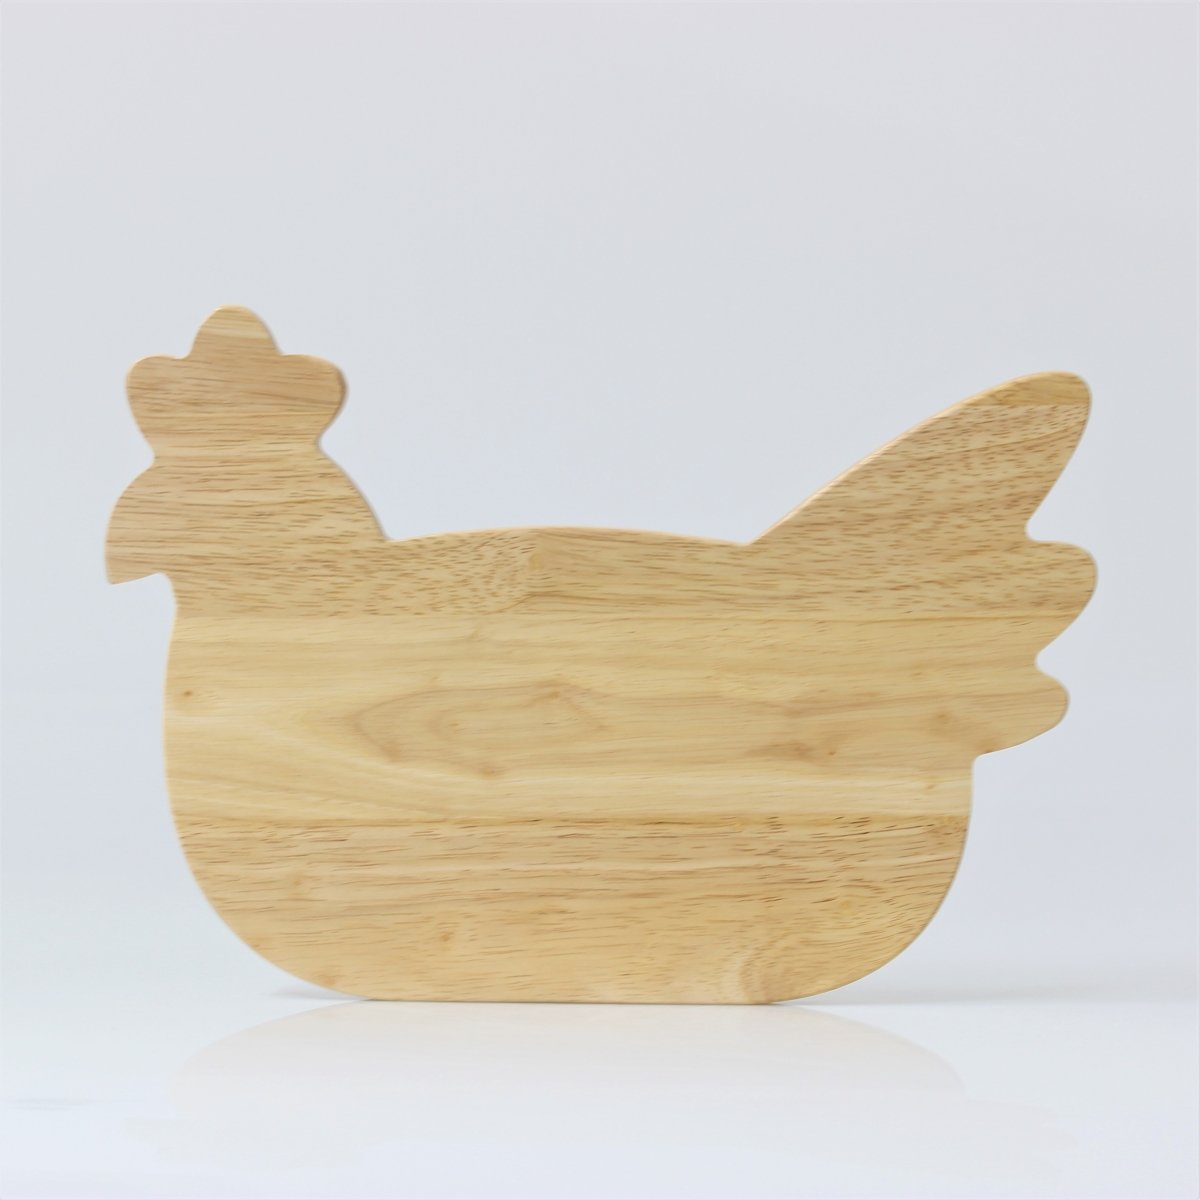 Chicken Shaped Breakfast Wooden Board - Bonnypack